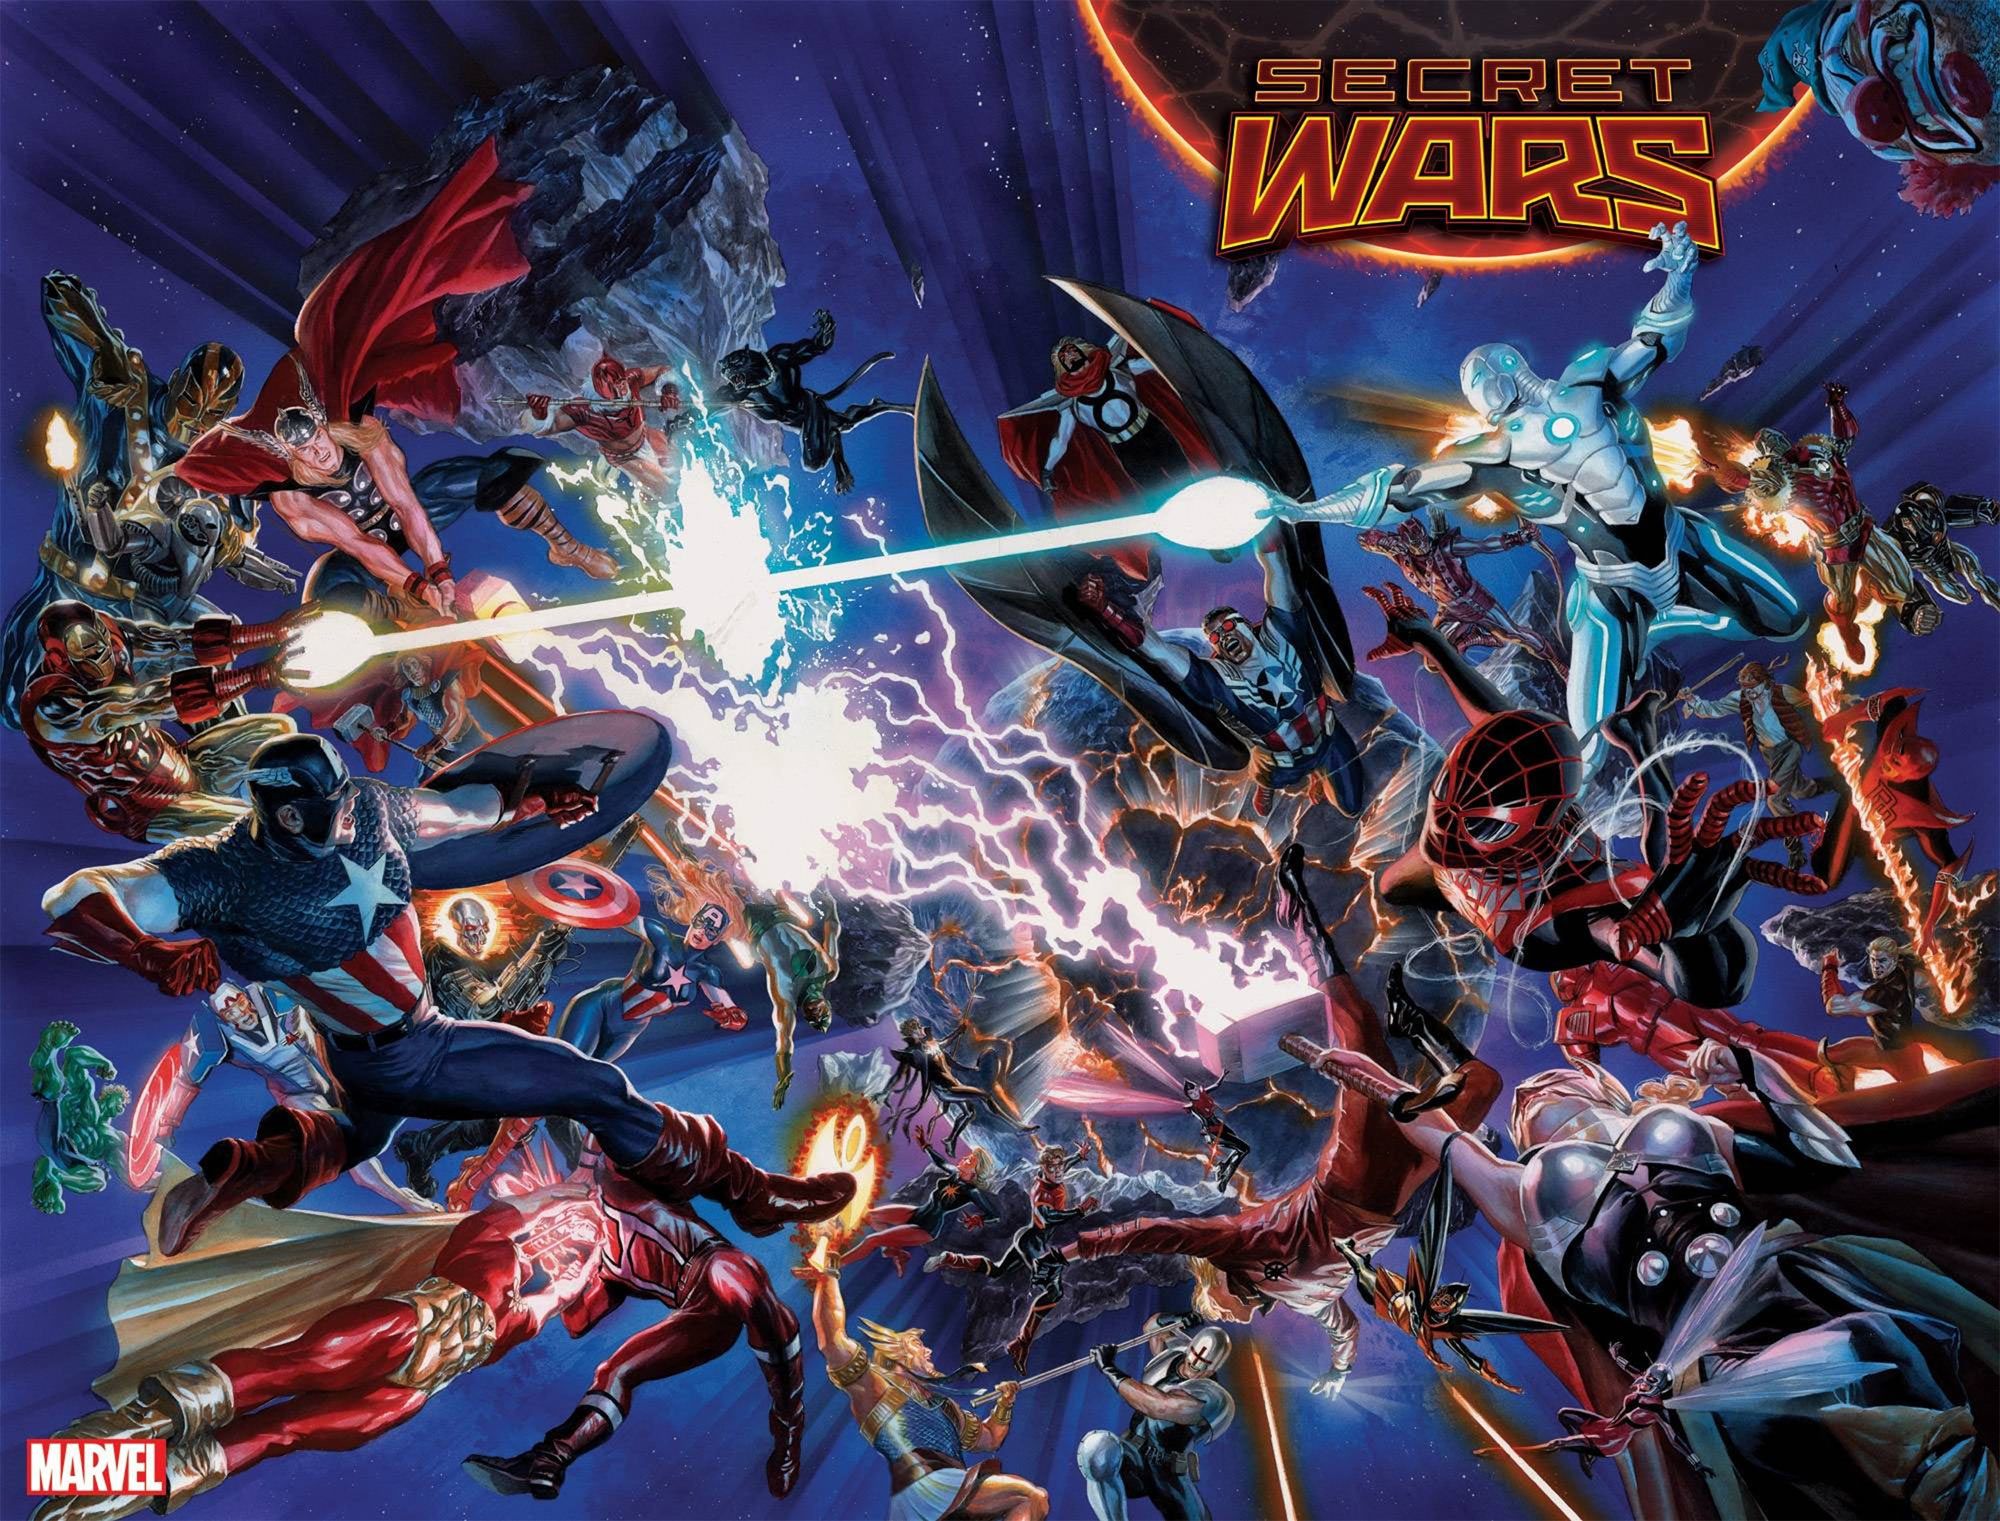 Marvel Comics Ends The Fantastic Four Alongside Secret Wars